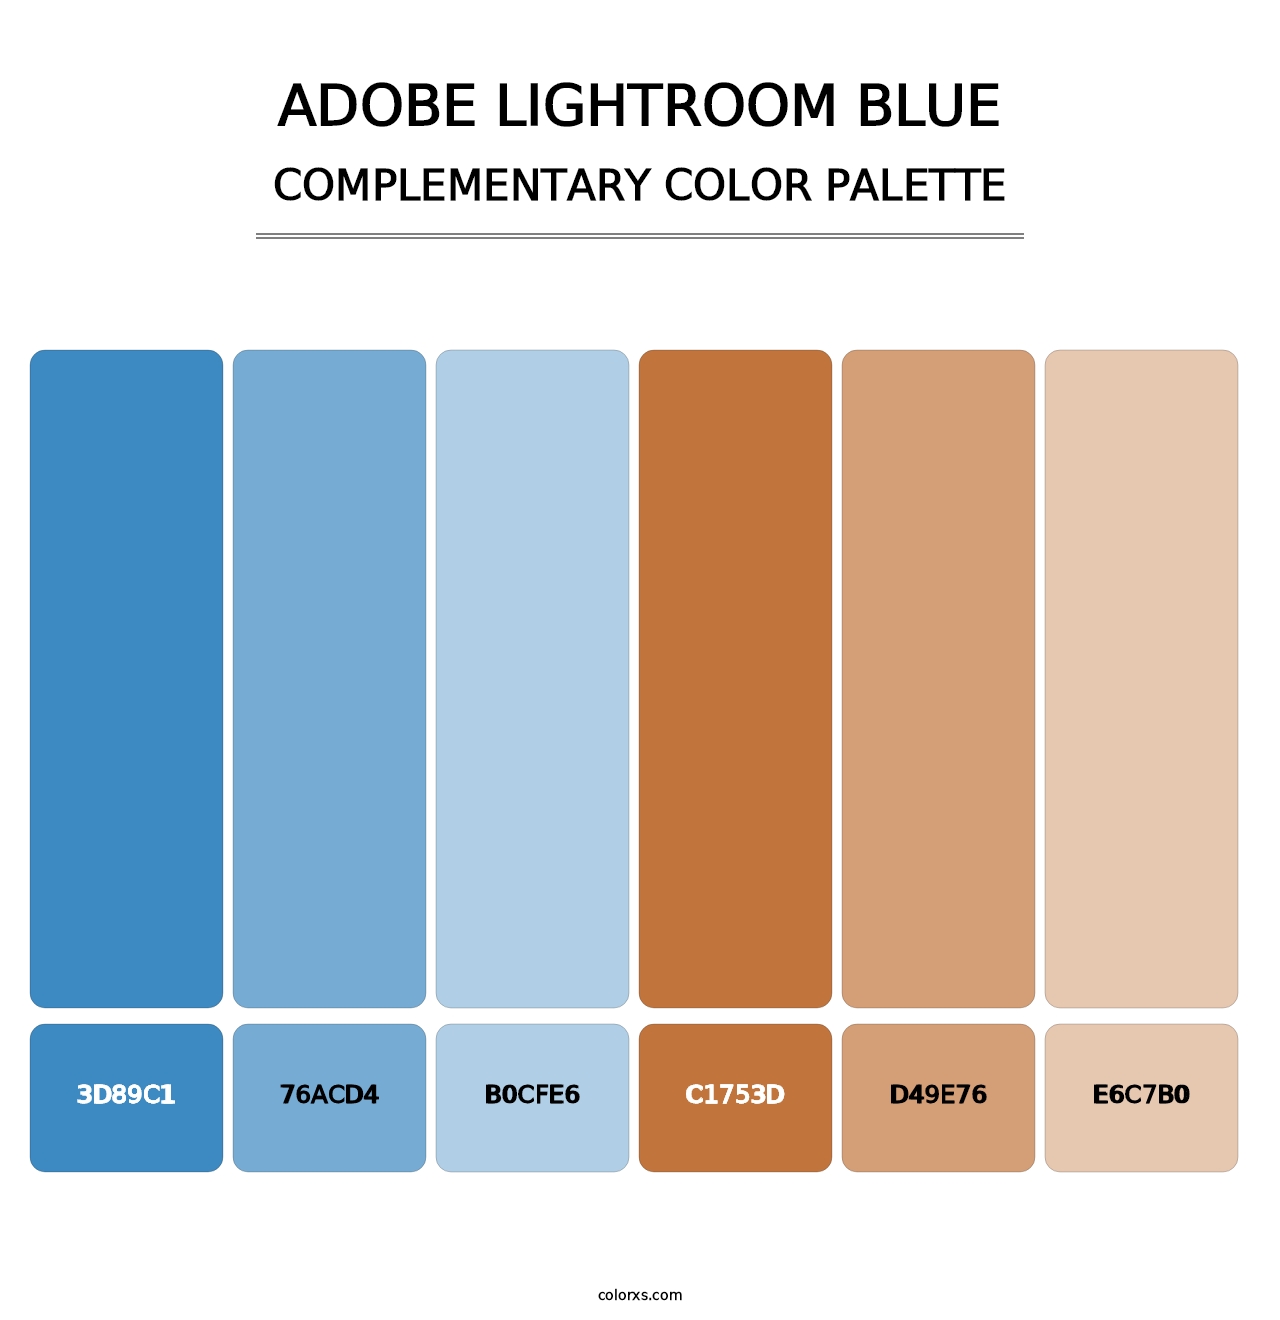 Adobe Lightroom Blue - Complementary Color Palette